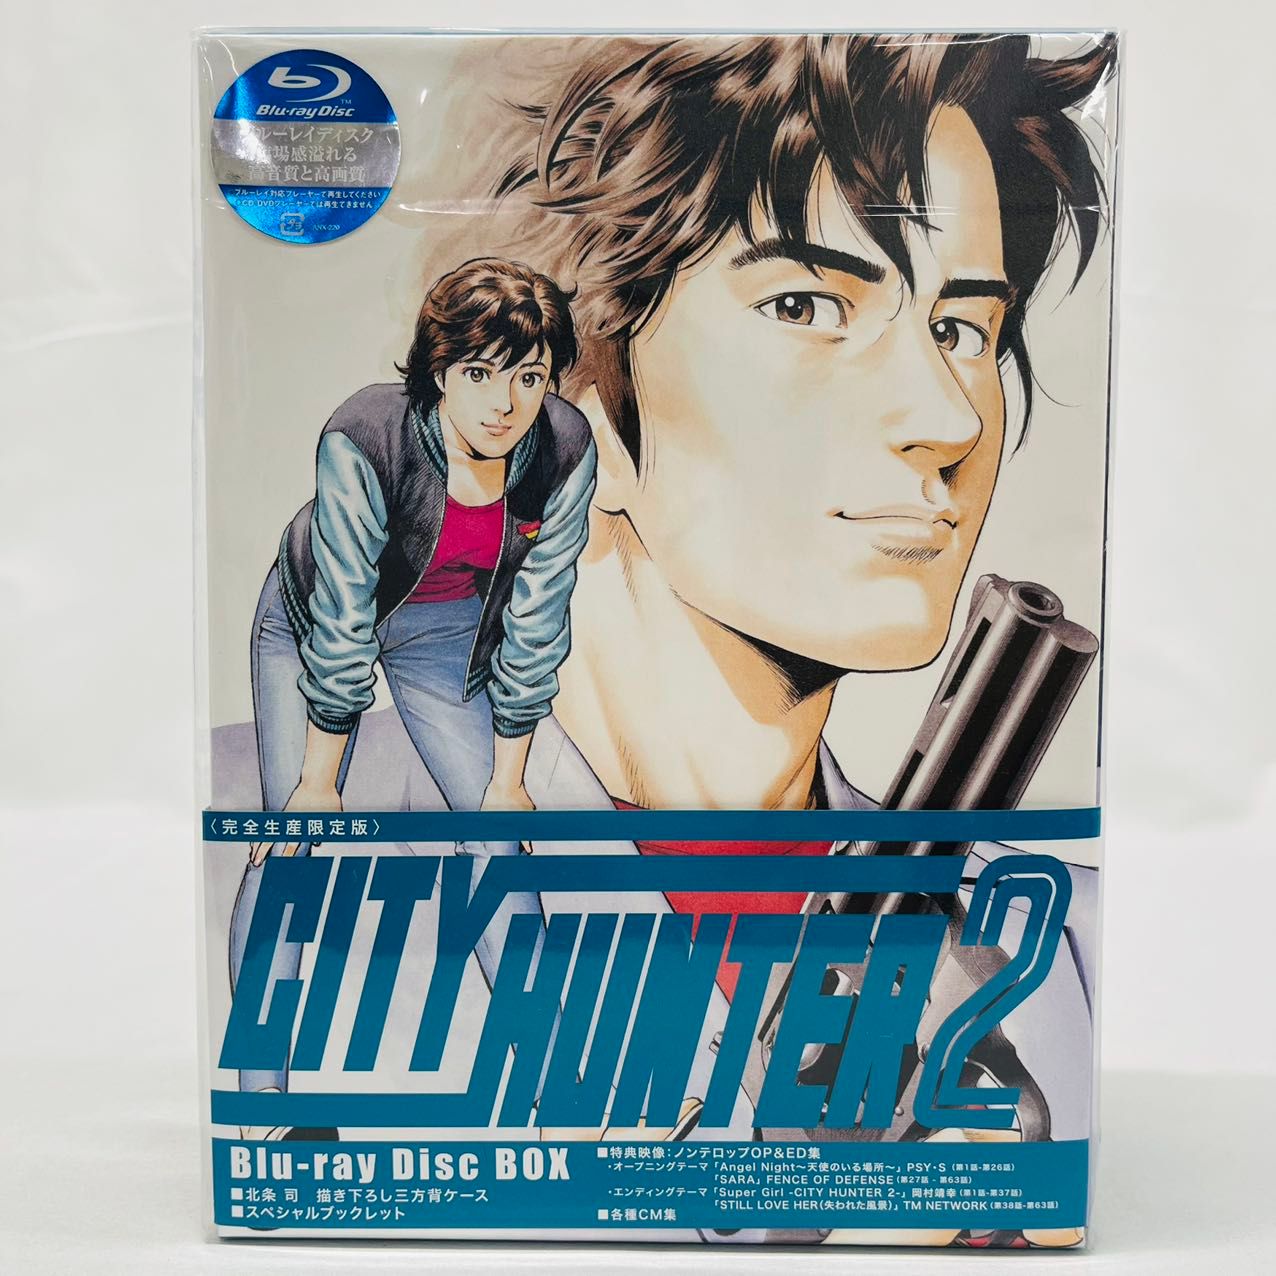 CITY HUNTER 2 Blu-ray Disc Box〈完全生産限定版〉